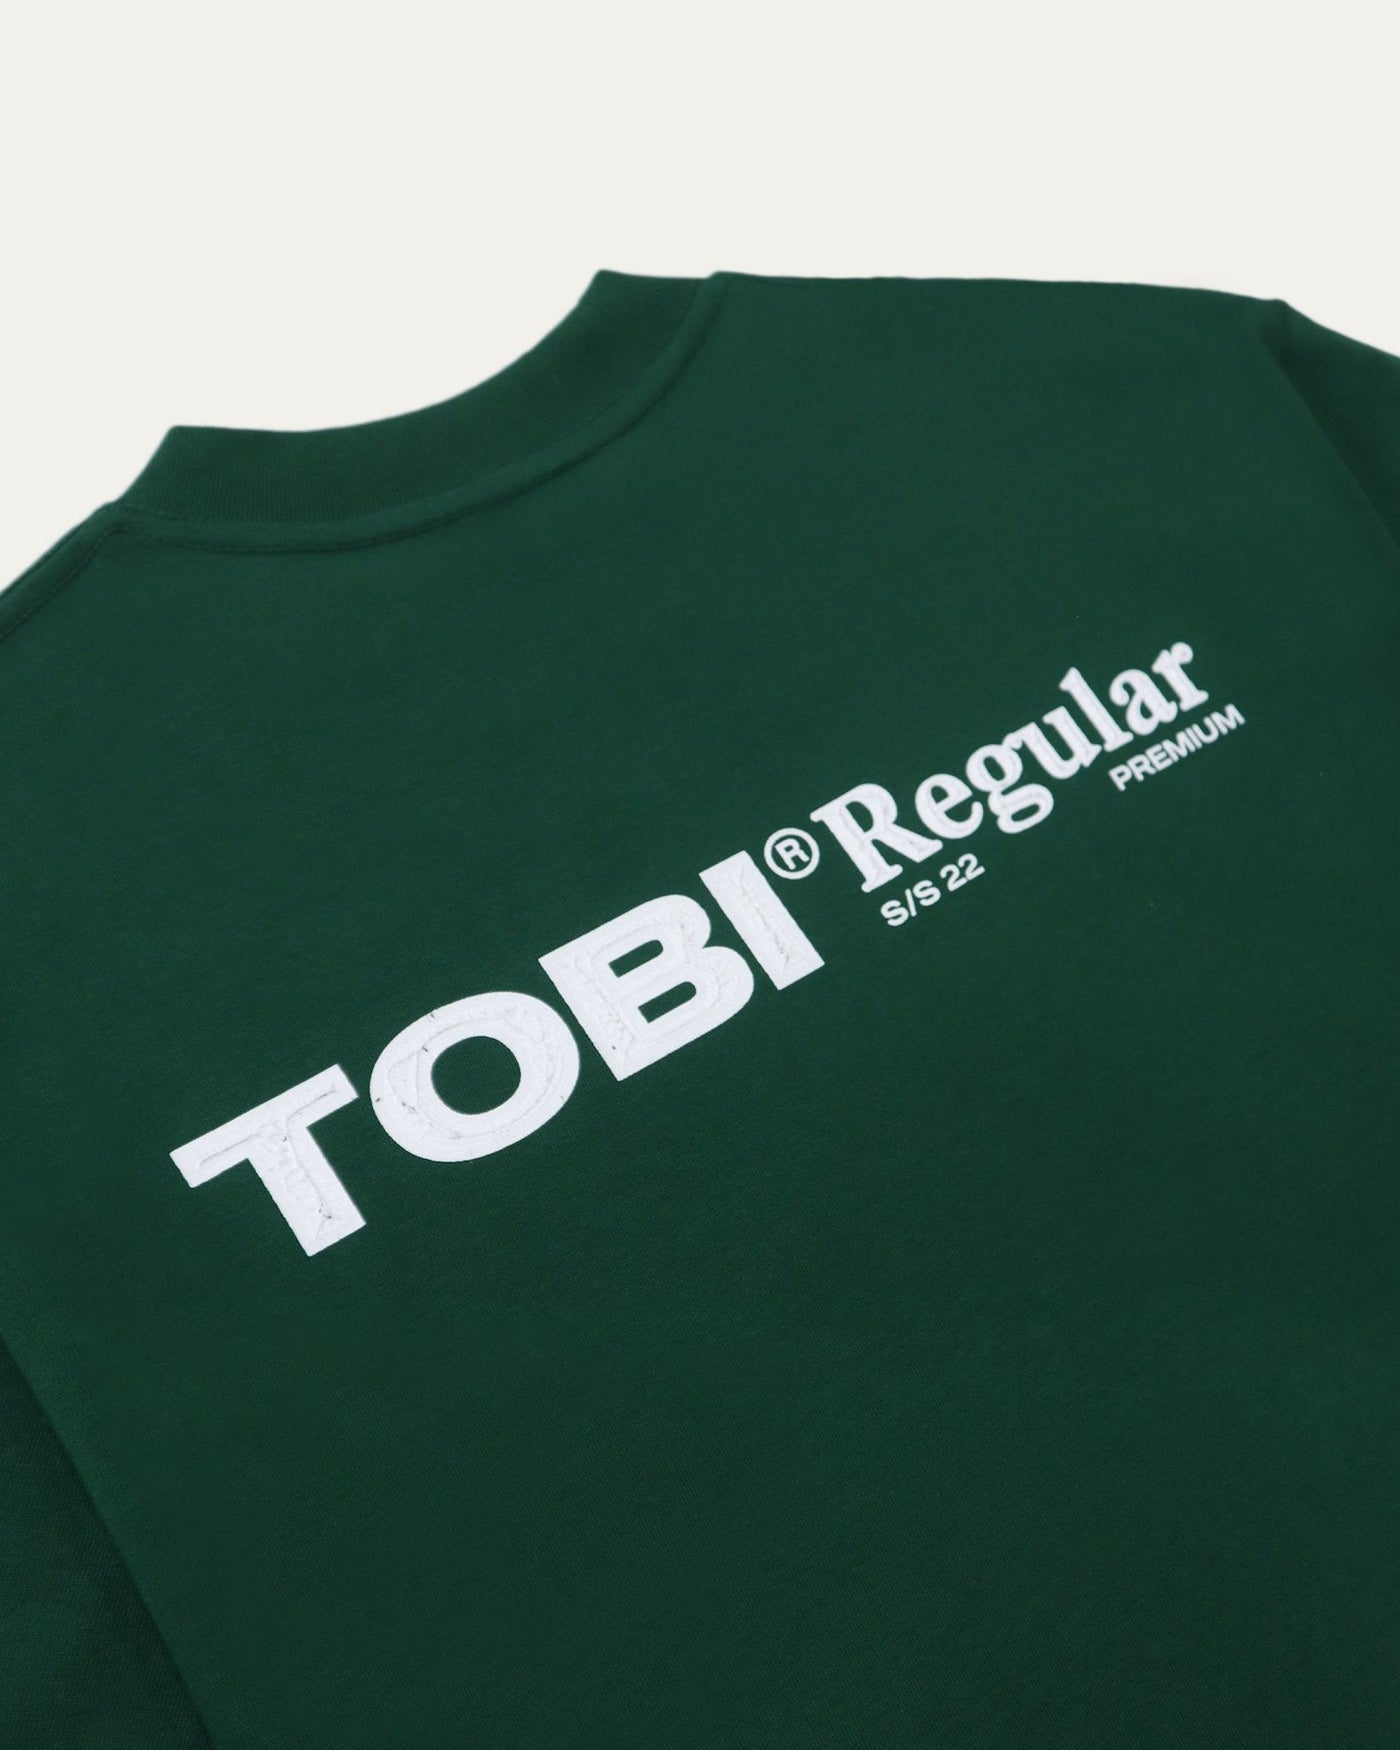 TOBI 280gsm Boxy Tee - Racing Green - TOBI